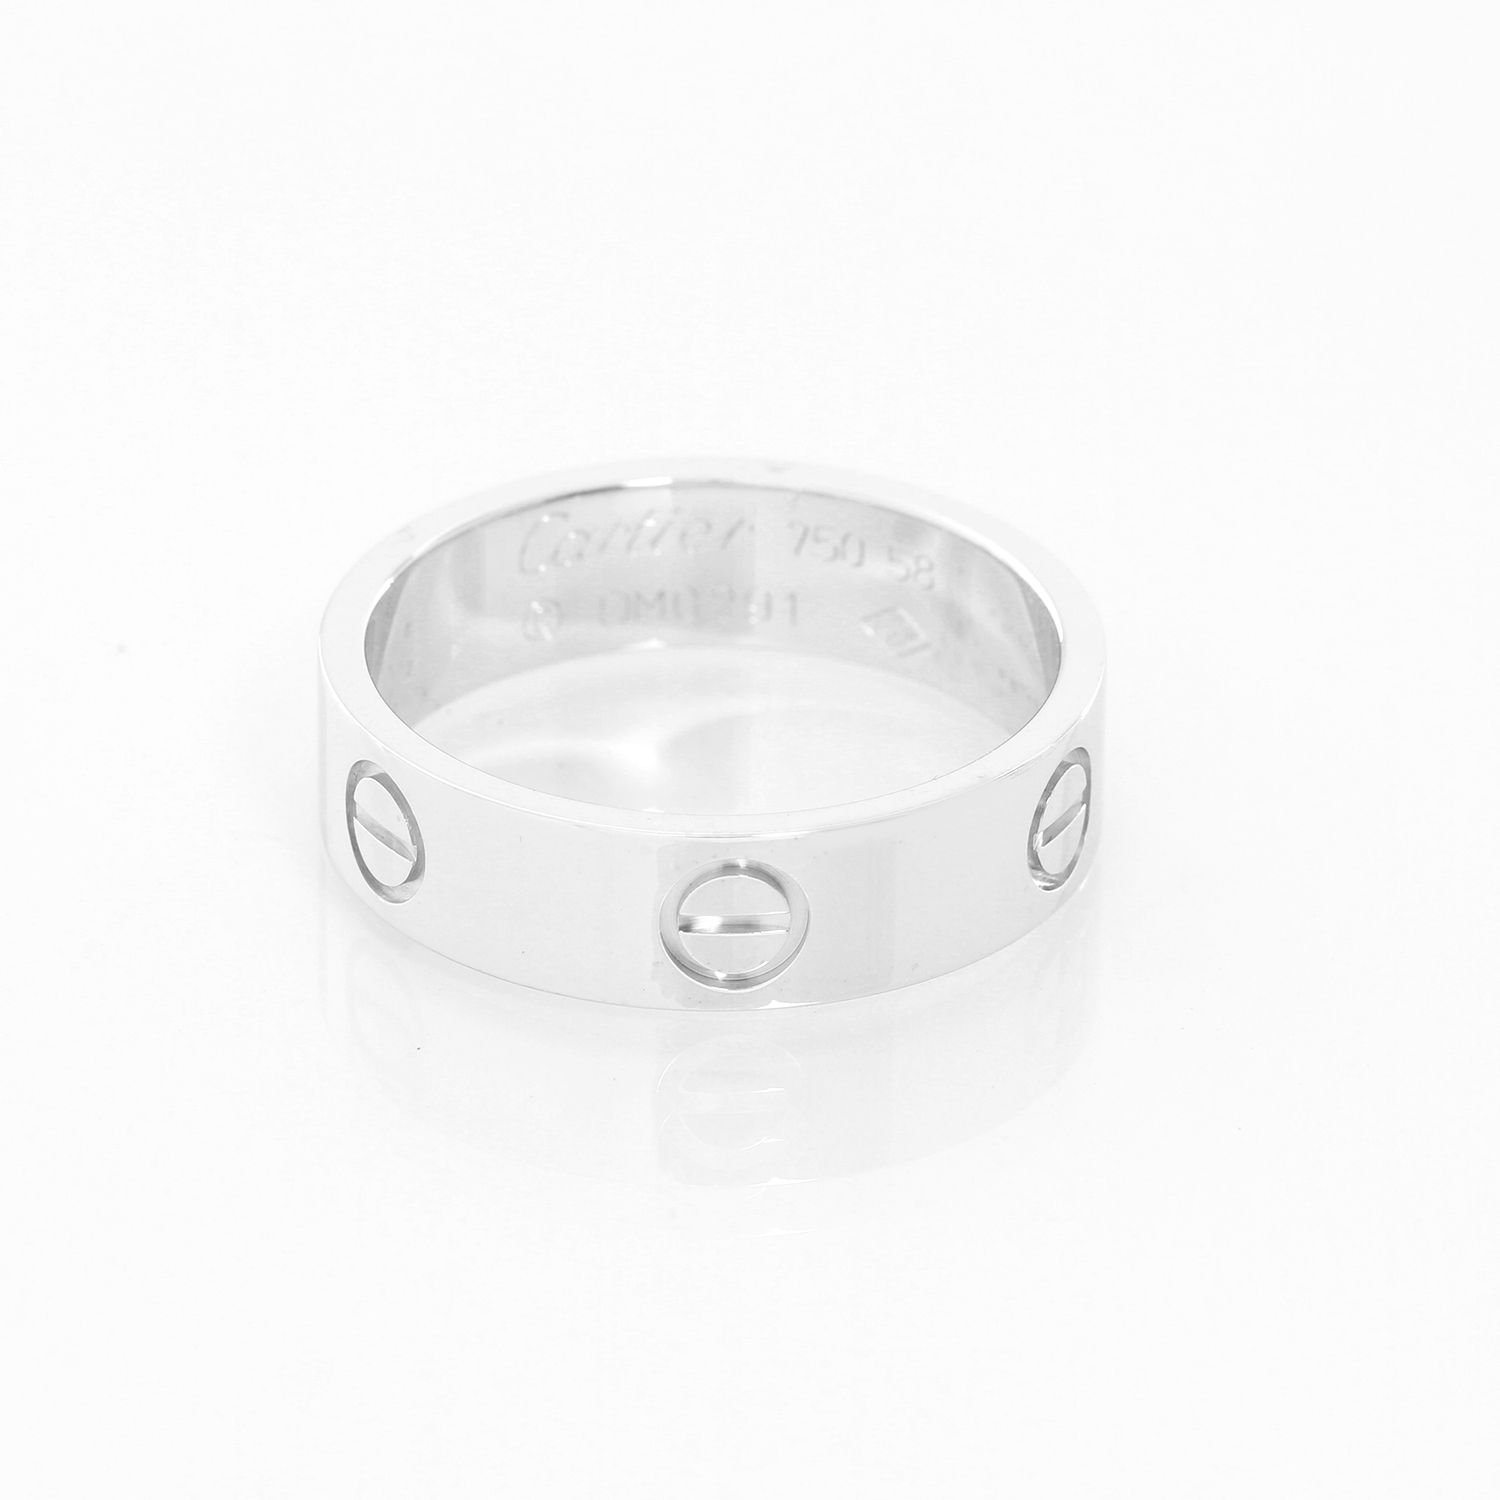 C De Cartier Diamond Gold Wedding Band Ring